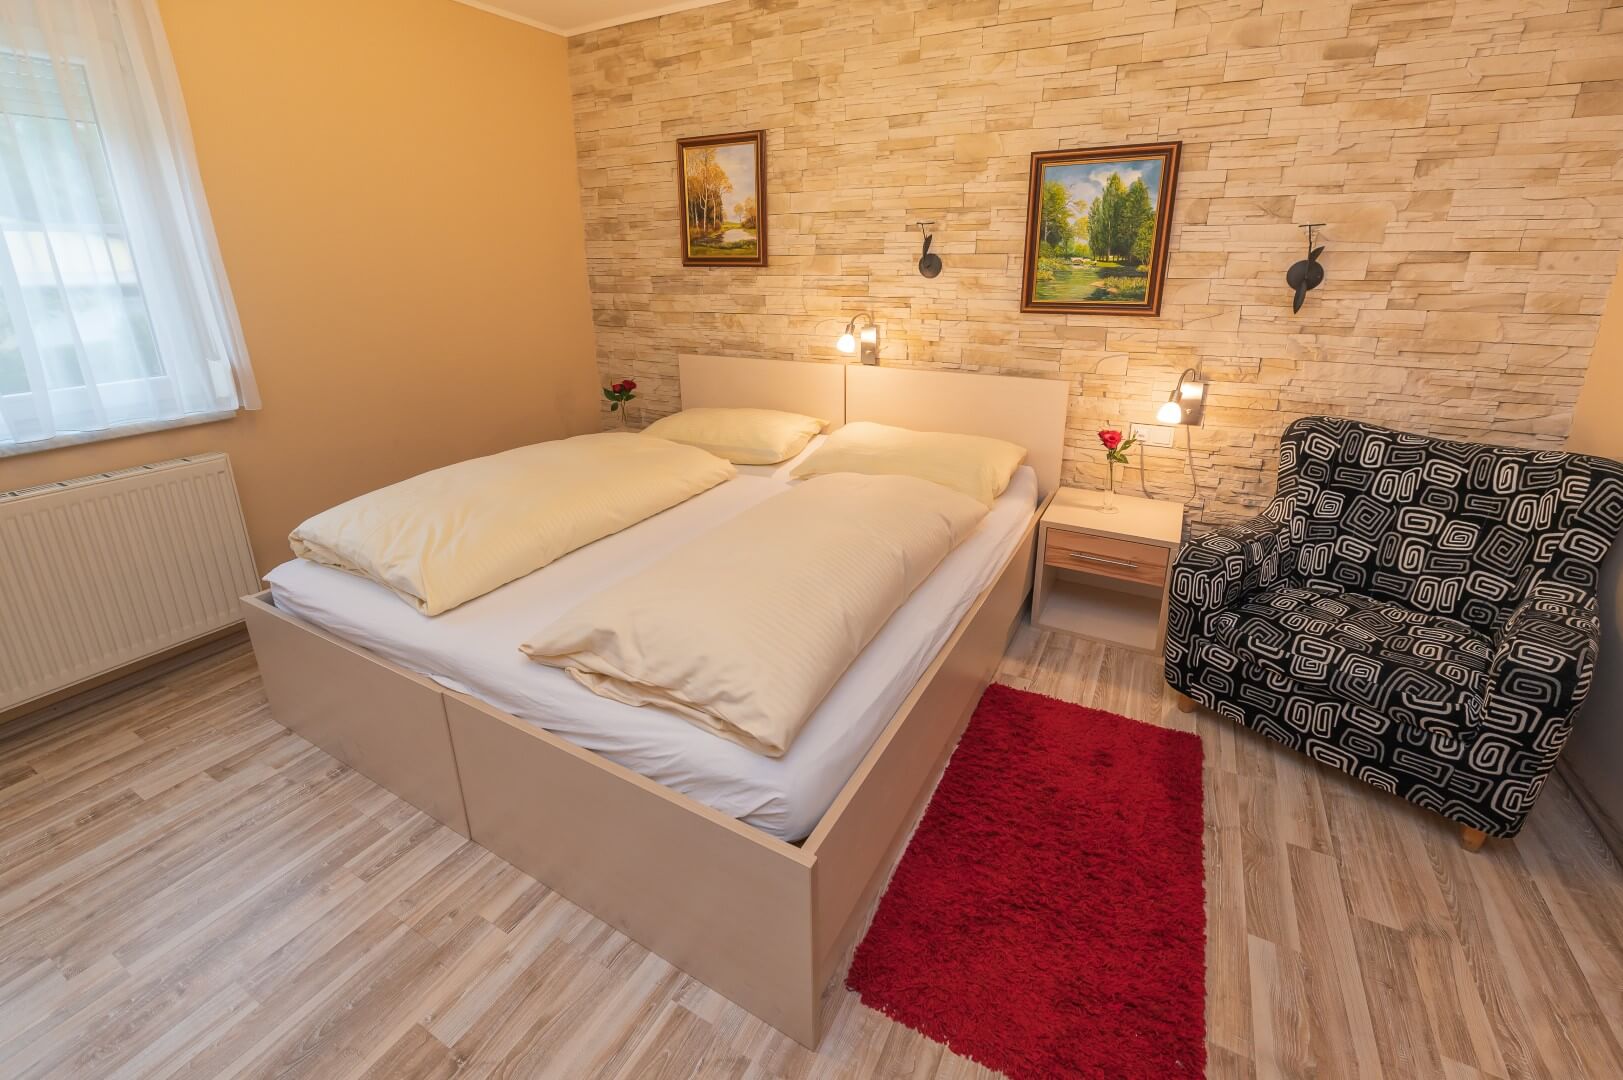 Warm beleuchtetes Zimmer mit großem Bett, Steinwand und einer gemusterten Sitzgelegenheit im Gasthaus Treiber.